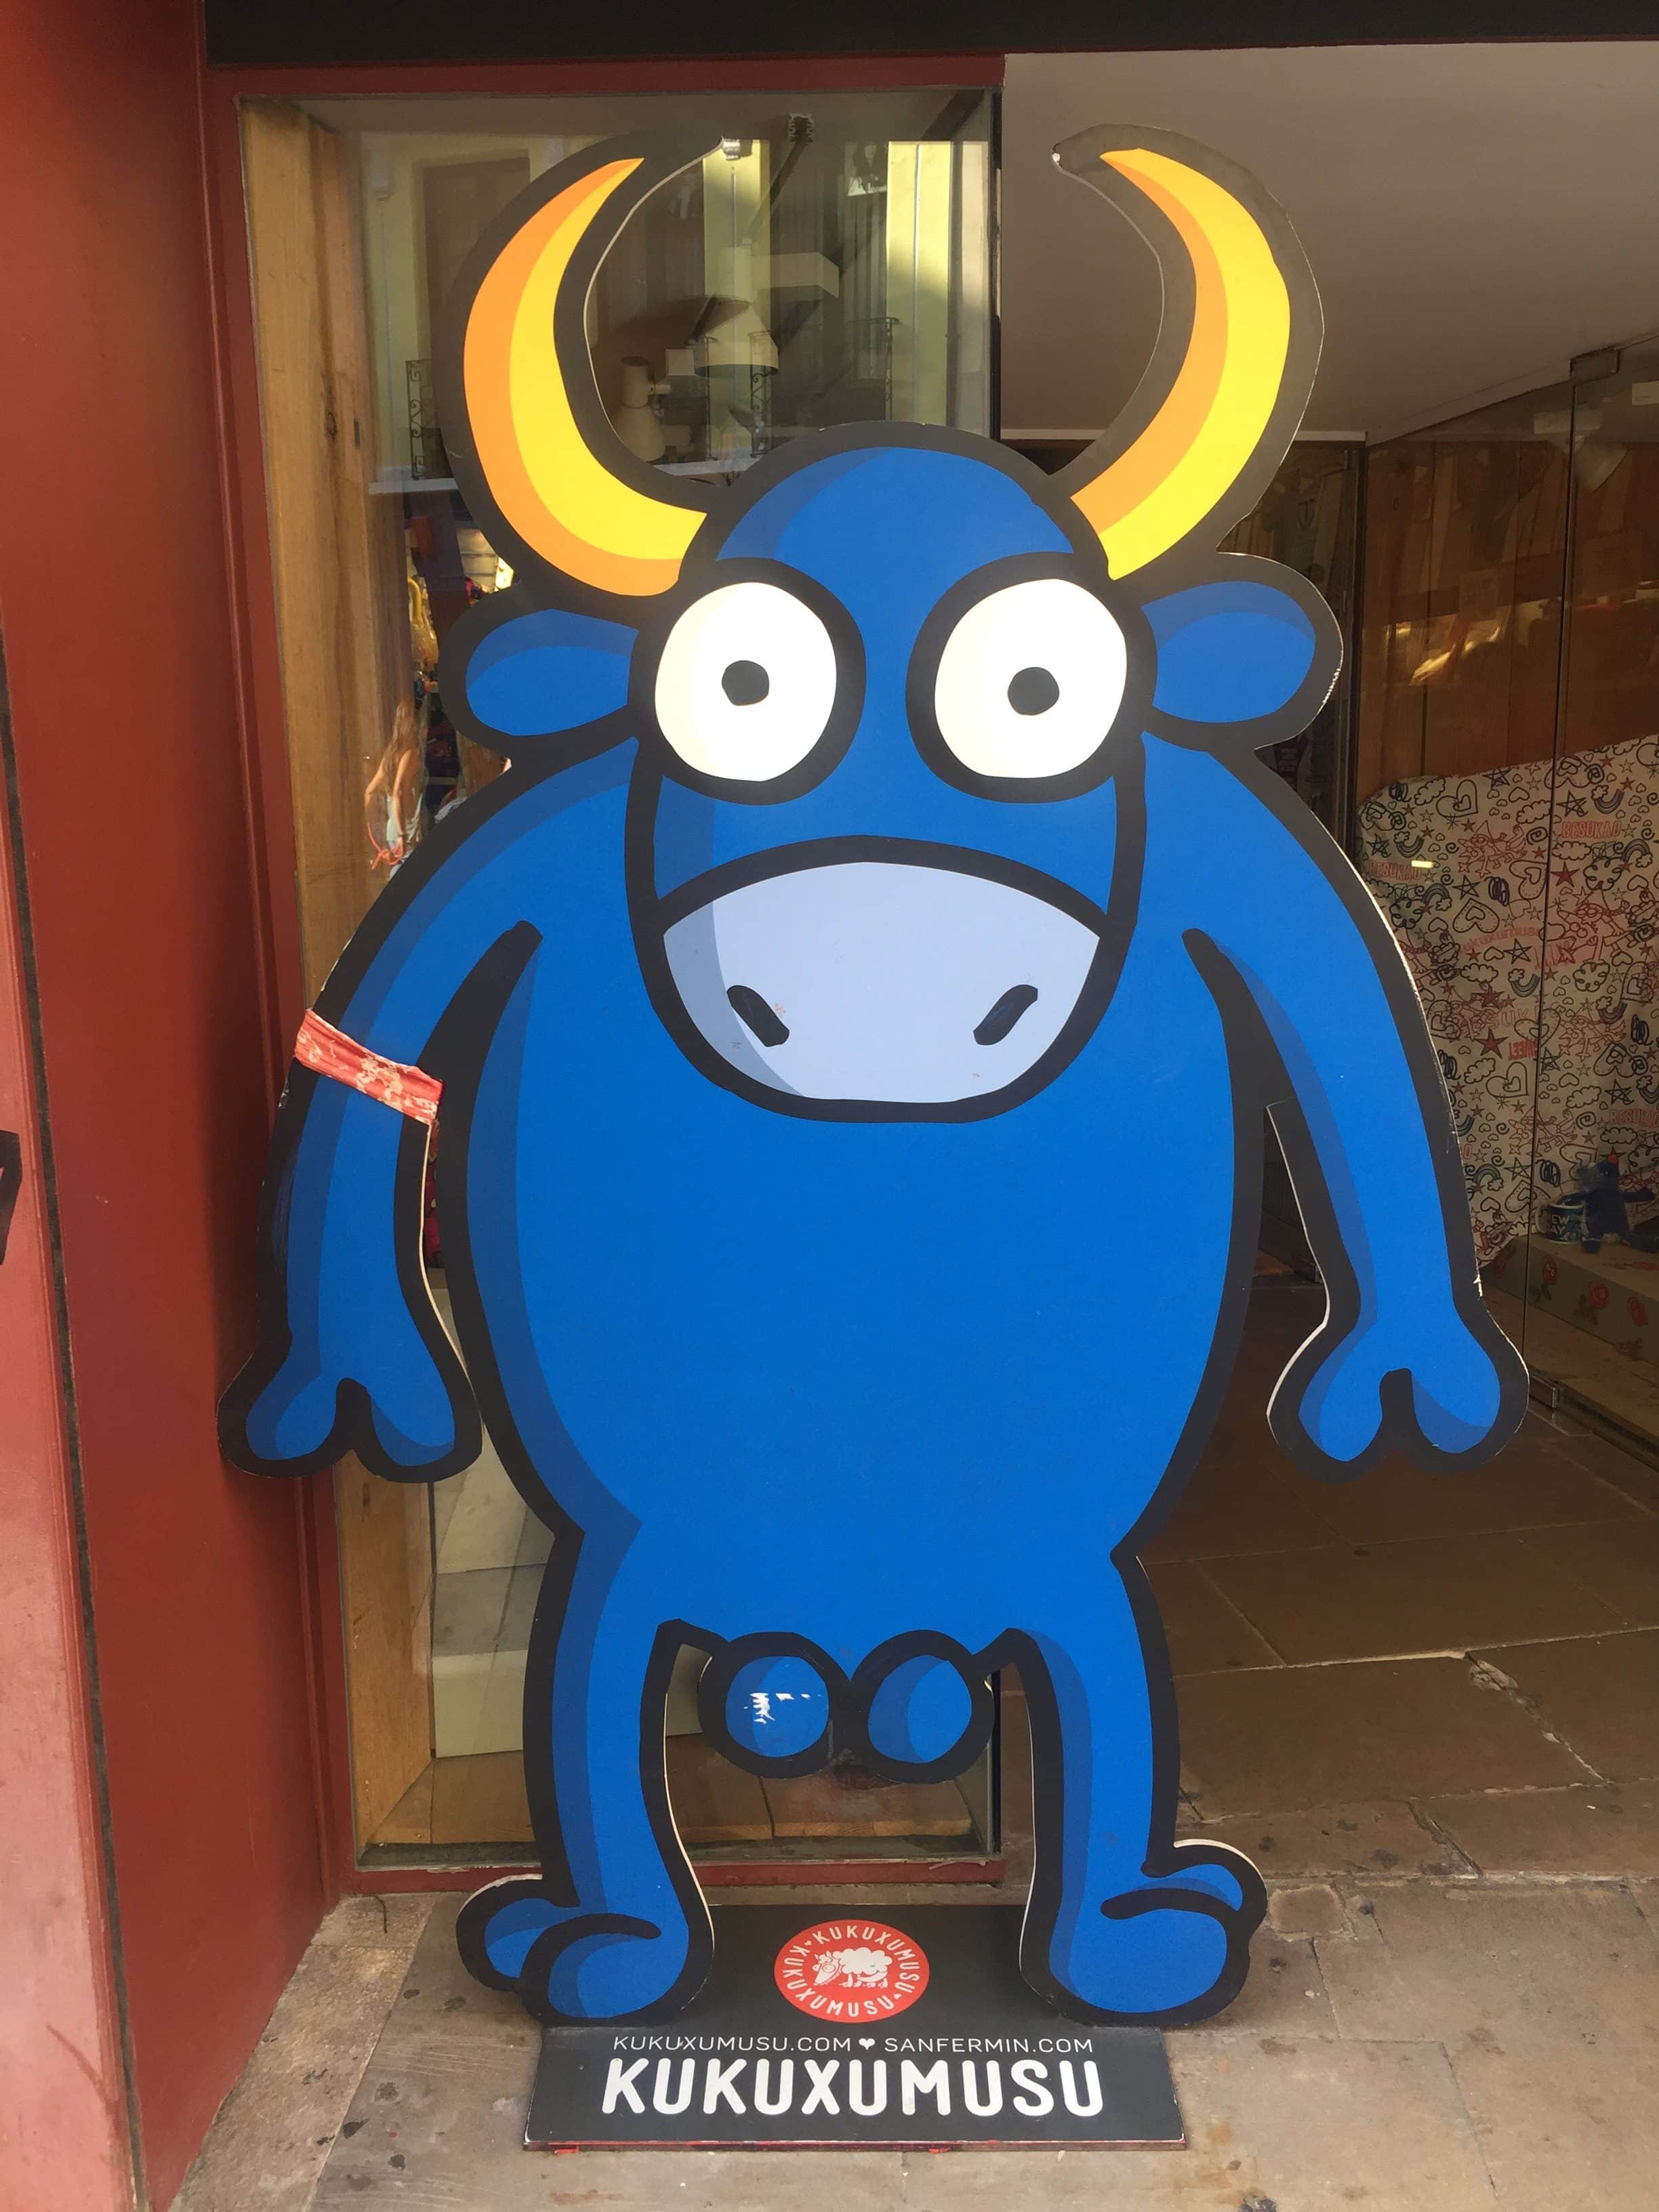 Blue balls on blue bull